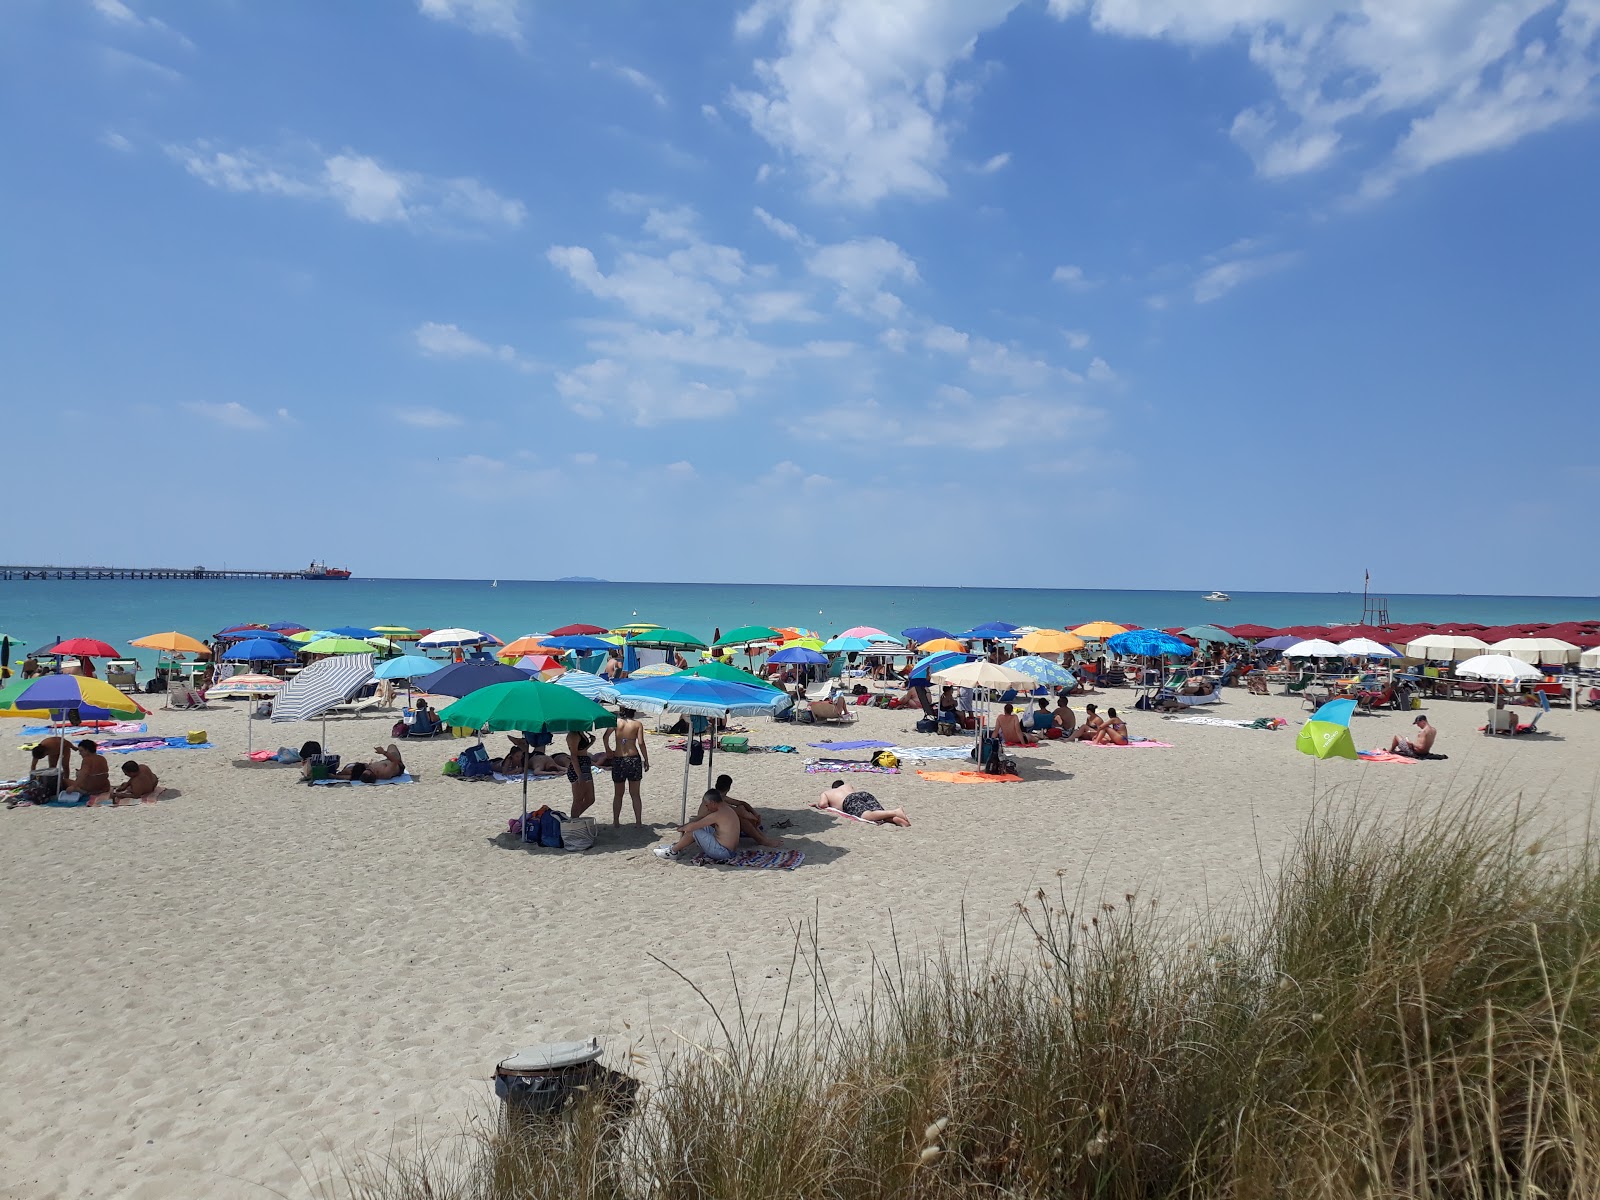 Foto de Spiaggia Pietrabianca ubicado en área natural